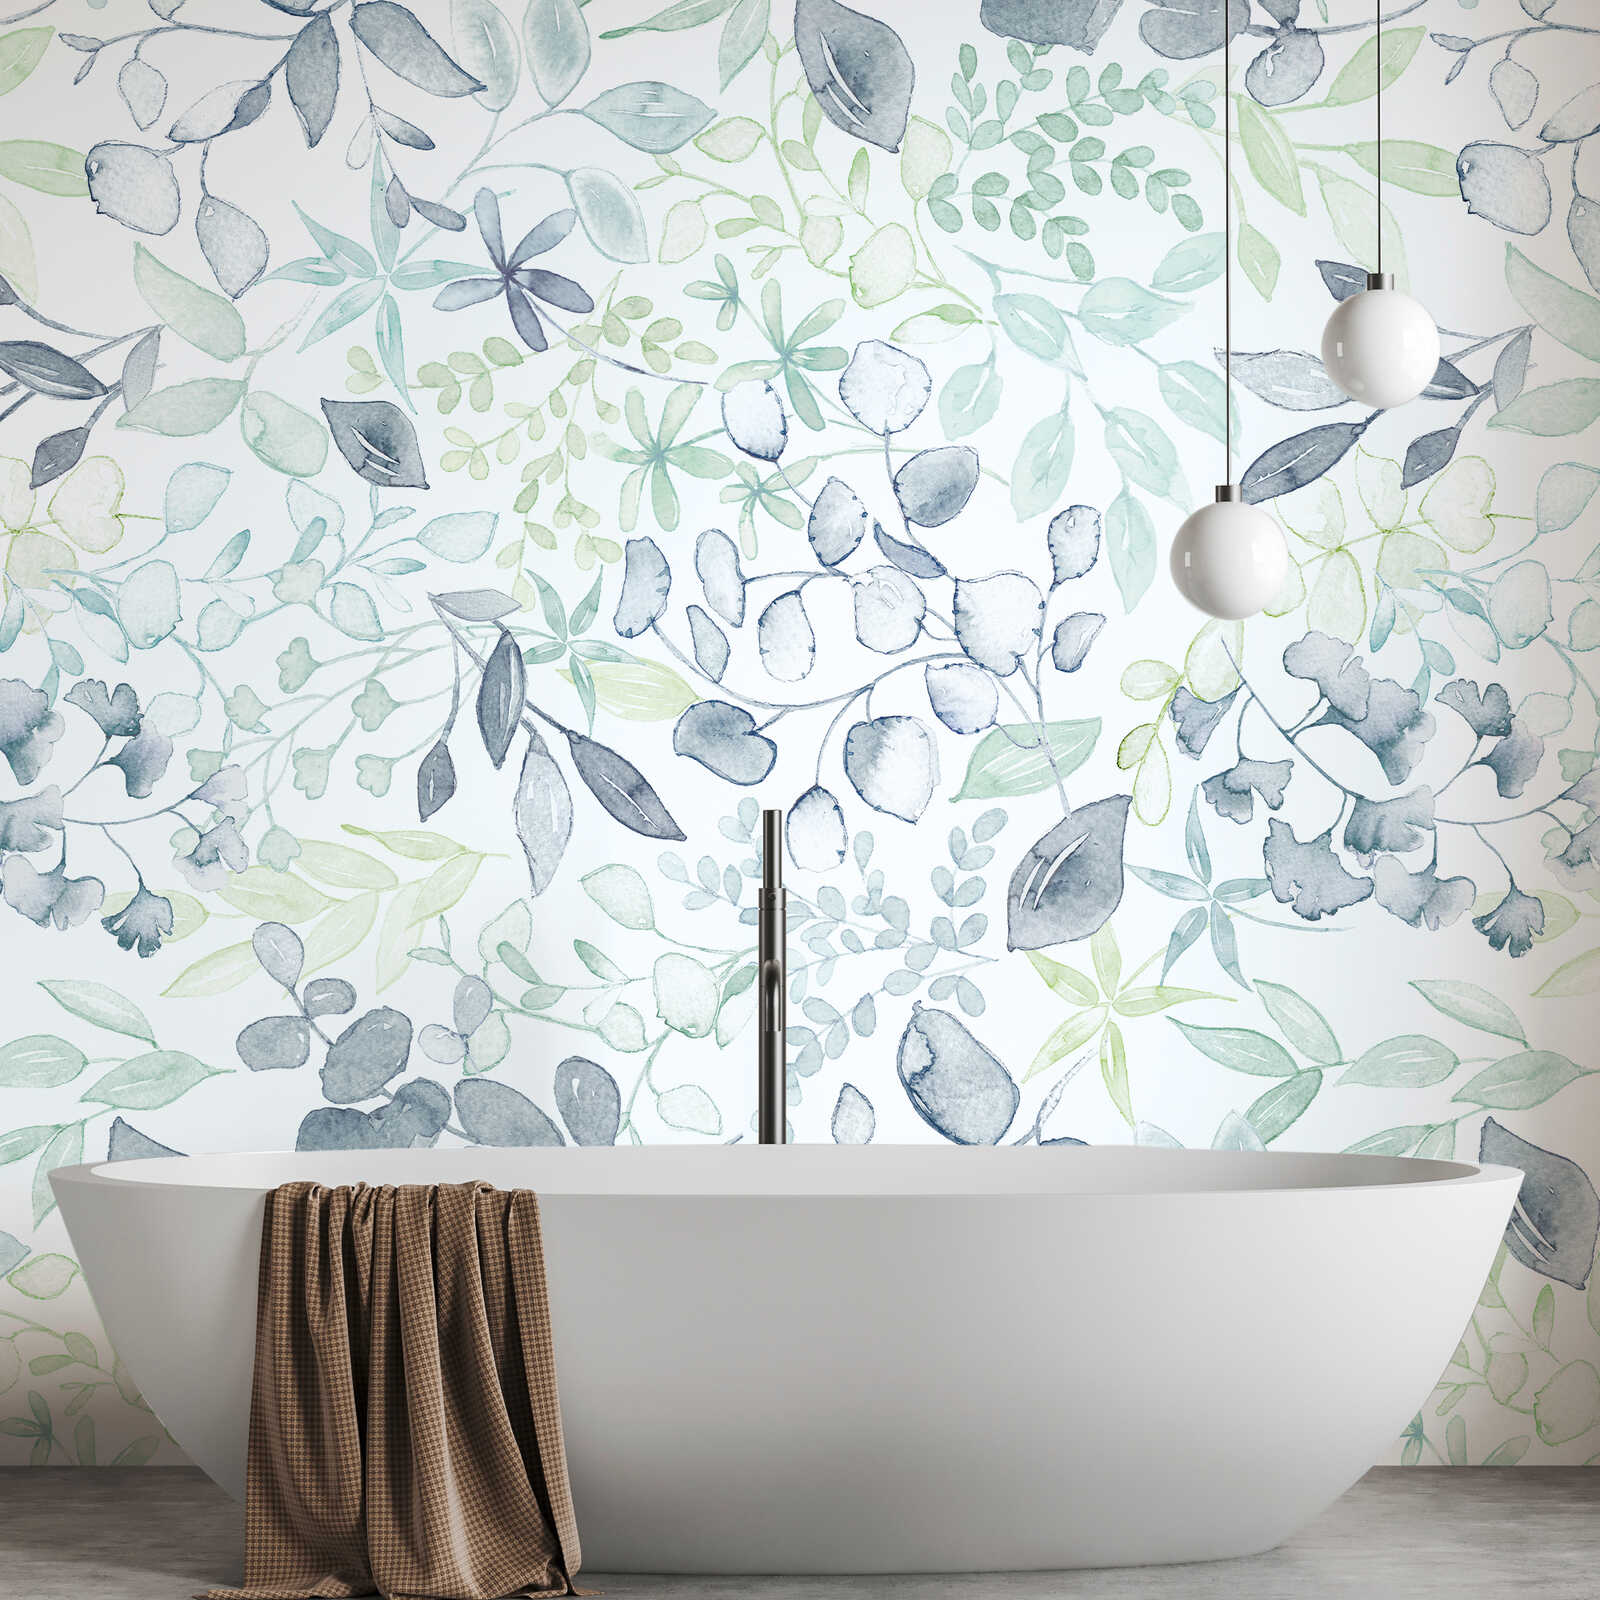         Motivtapete im XXL-Design mit Blumenmuster im Aquarellstil – Blau, Grün, Weiß
    